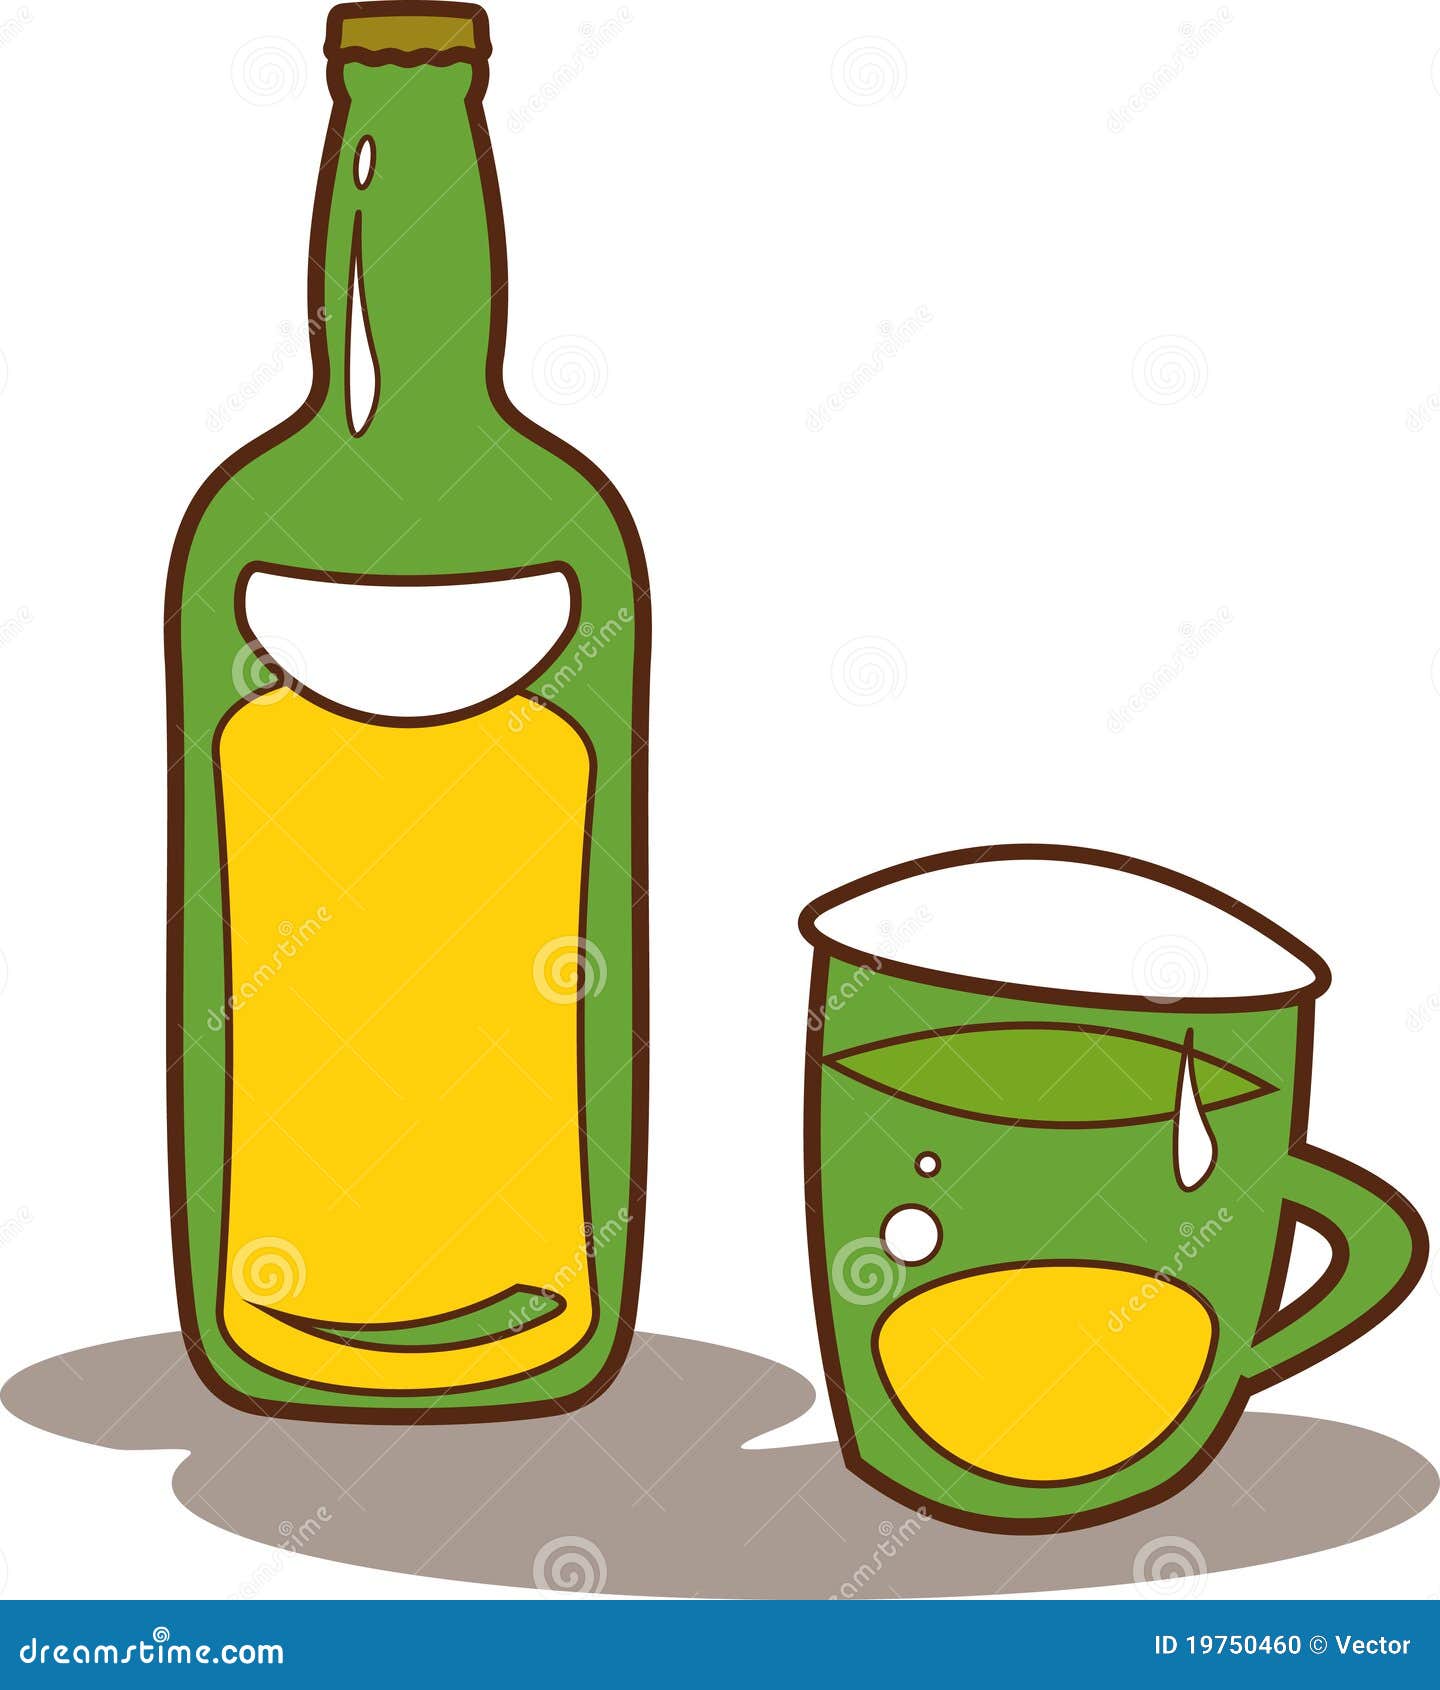 Download Vector Bottle Of Beer And Beer Mug Illustration Stock ...